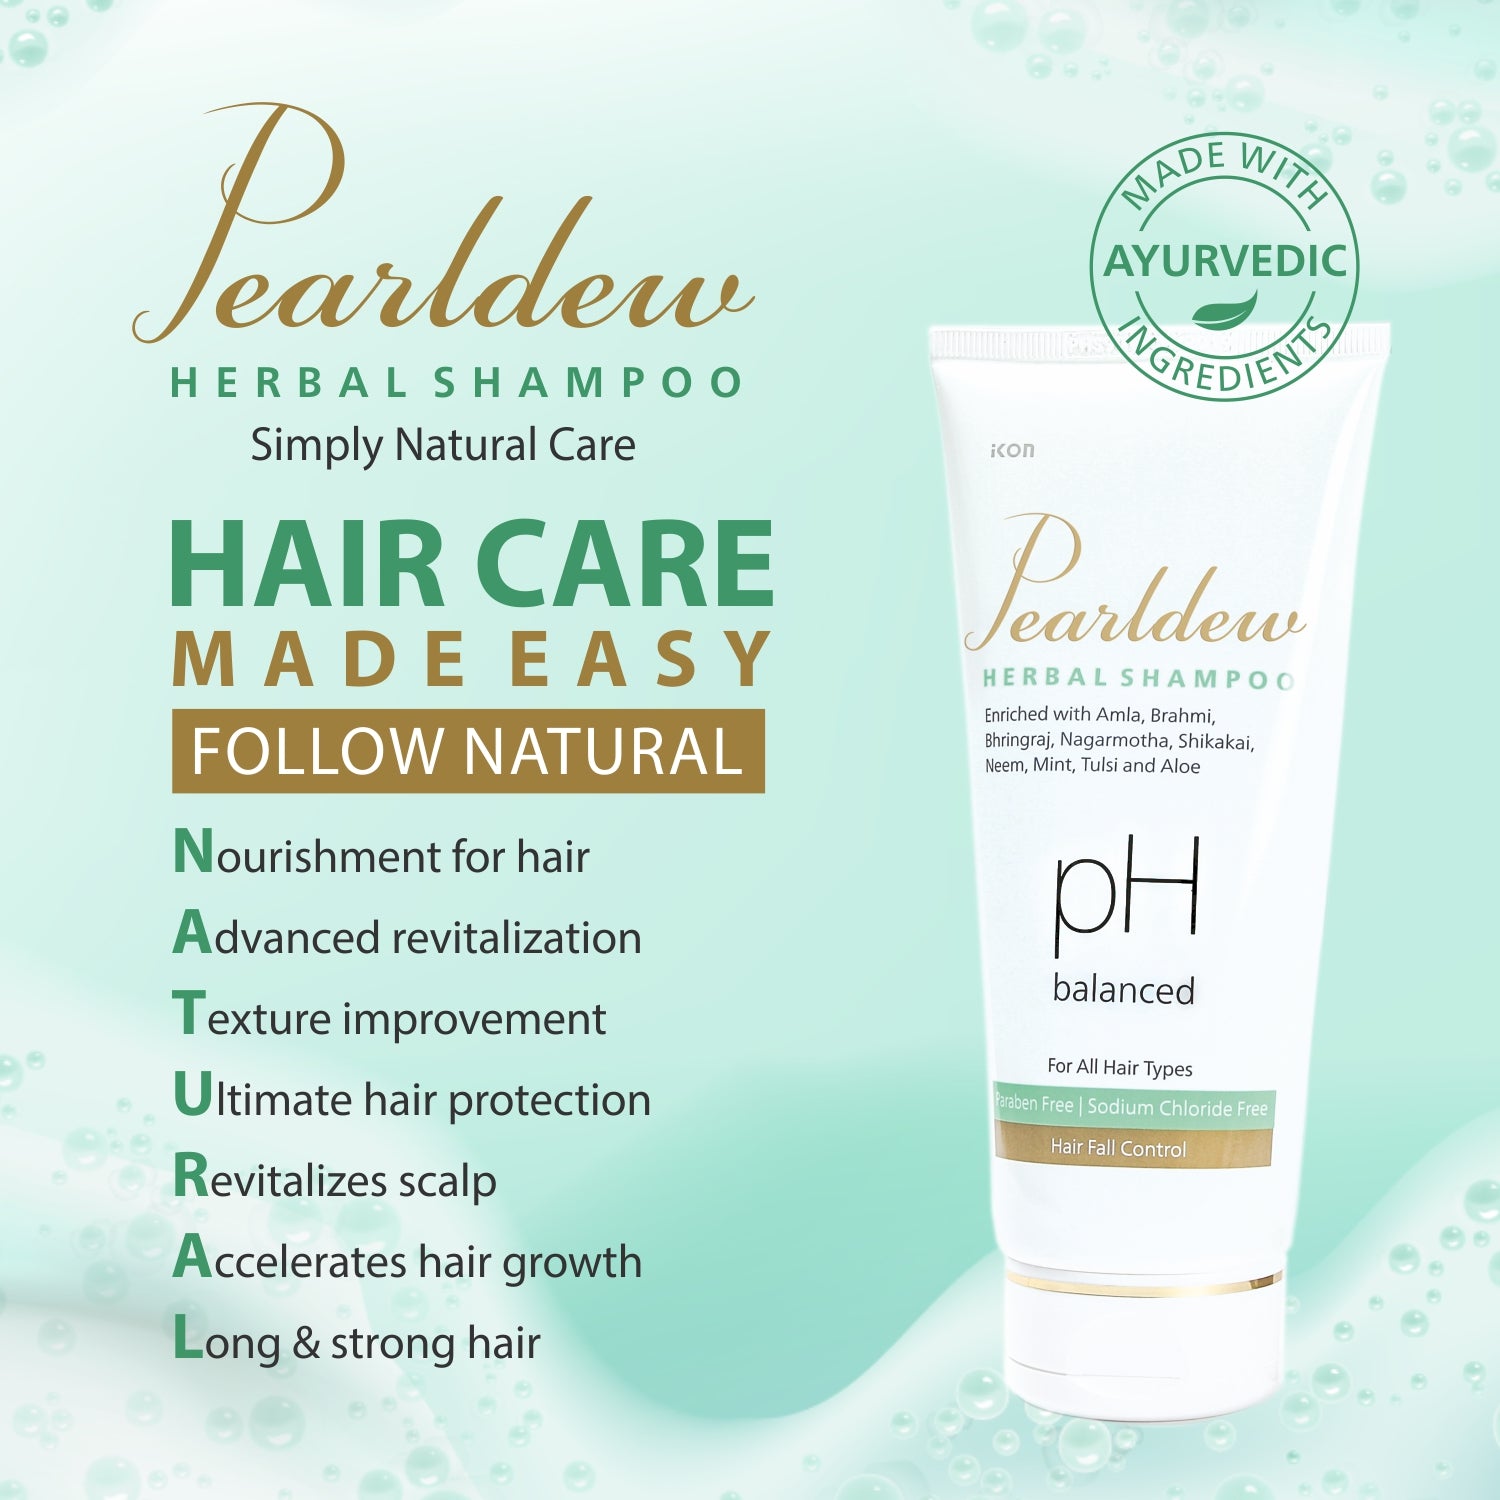 Pearldew Herbal Shampoo (200 ml)